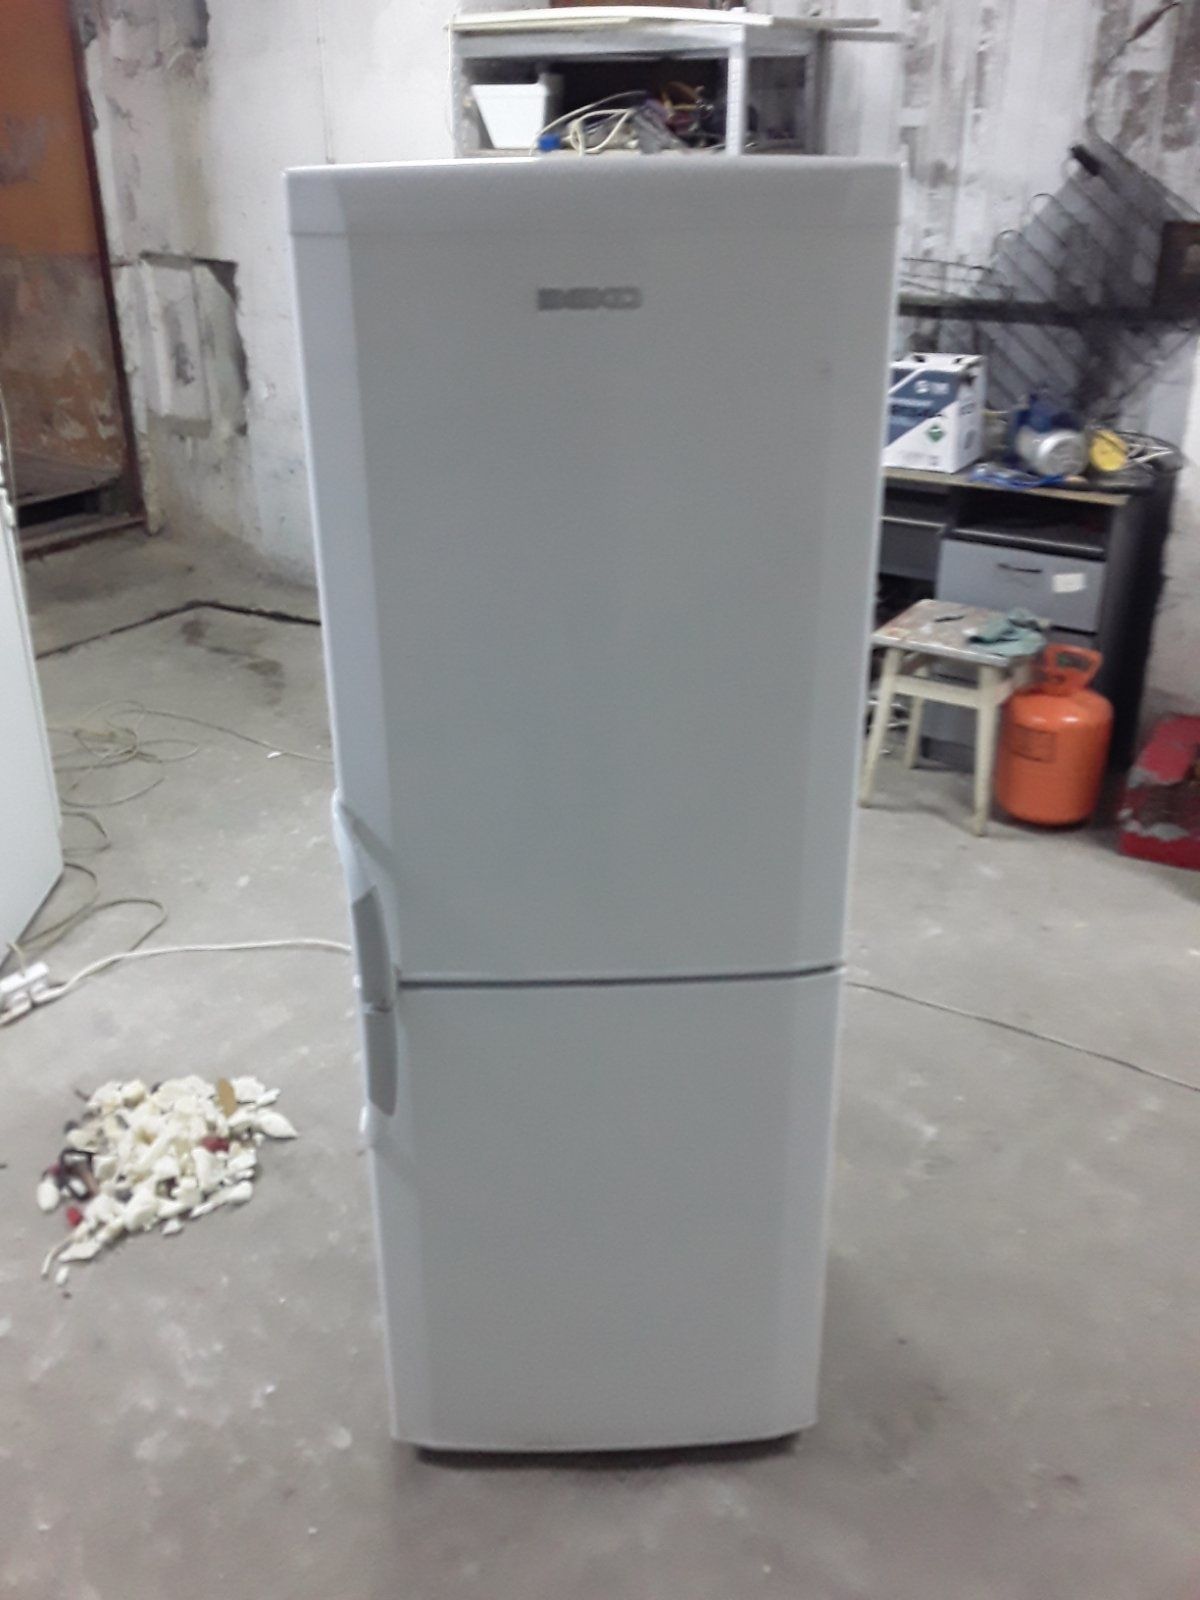 Вузький холодильник Gorenje K357/2MELA*54см. Асортимент.Гарантія.